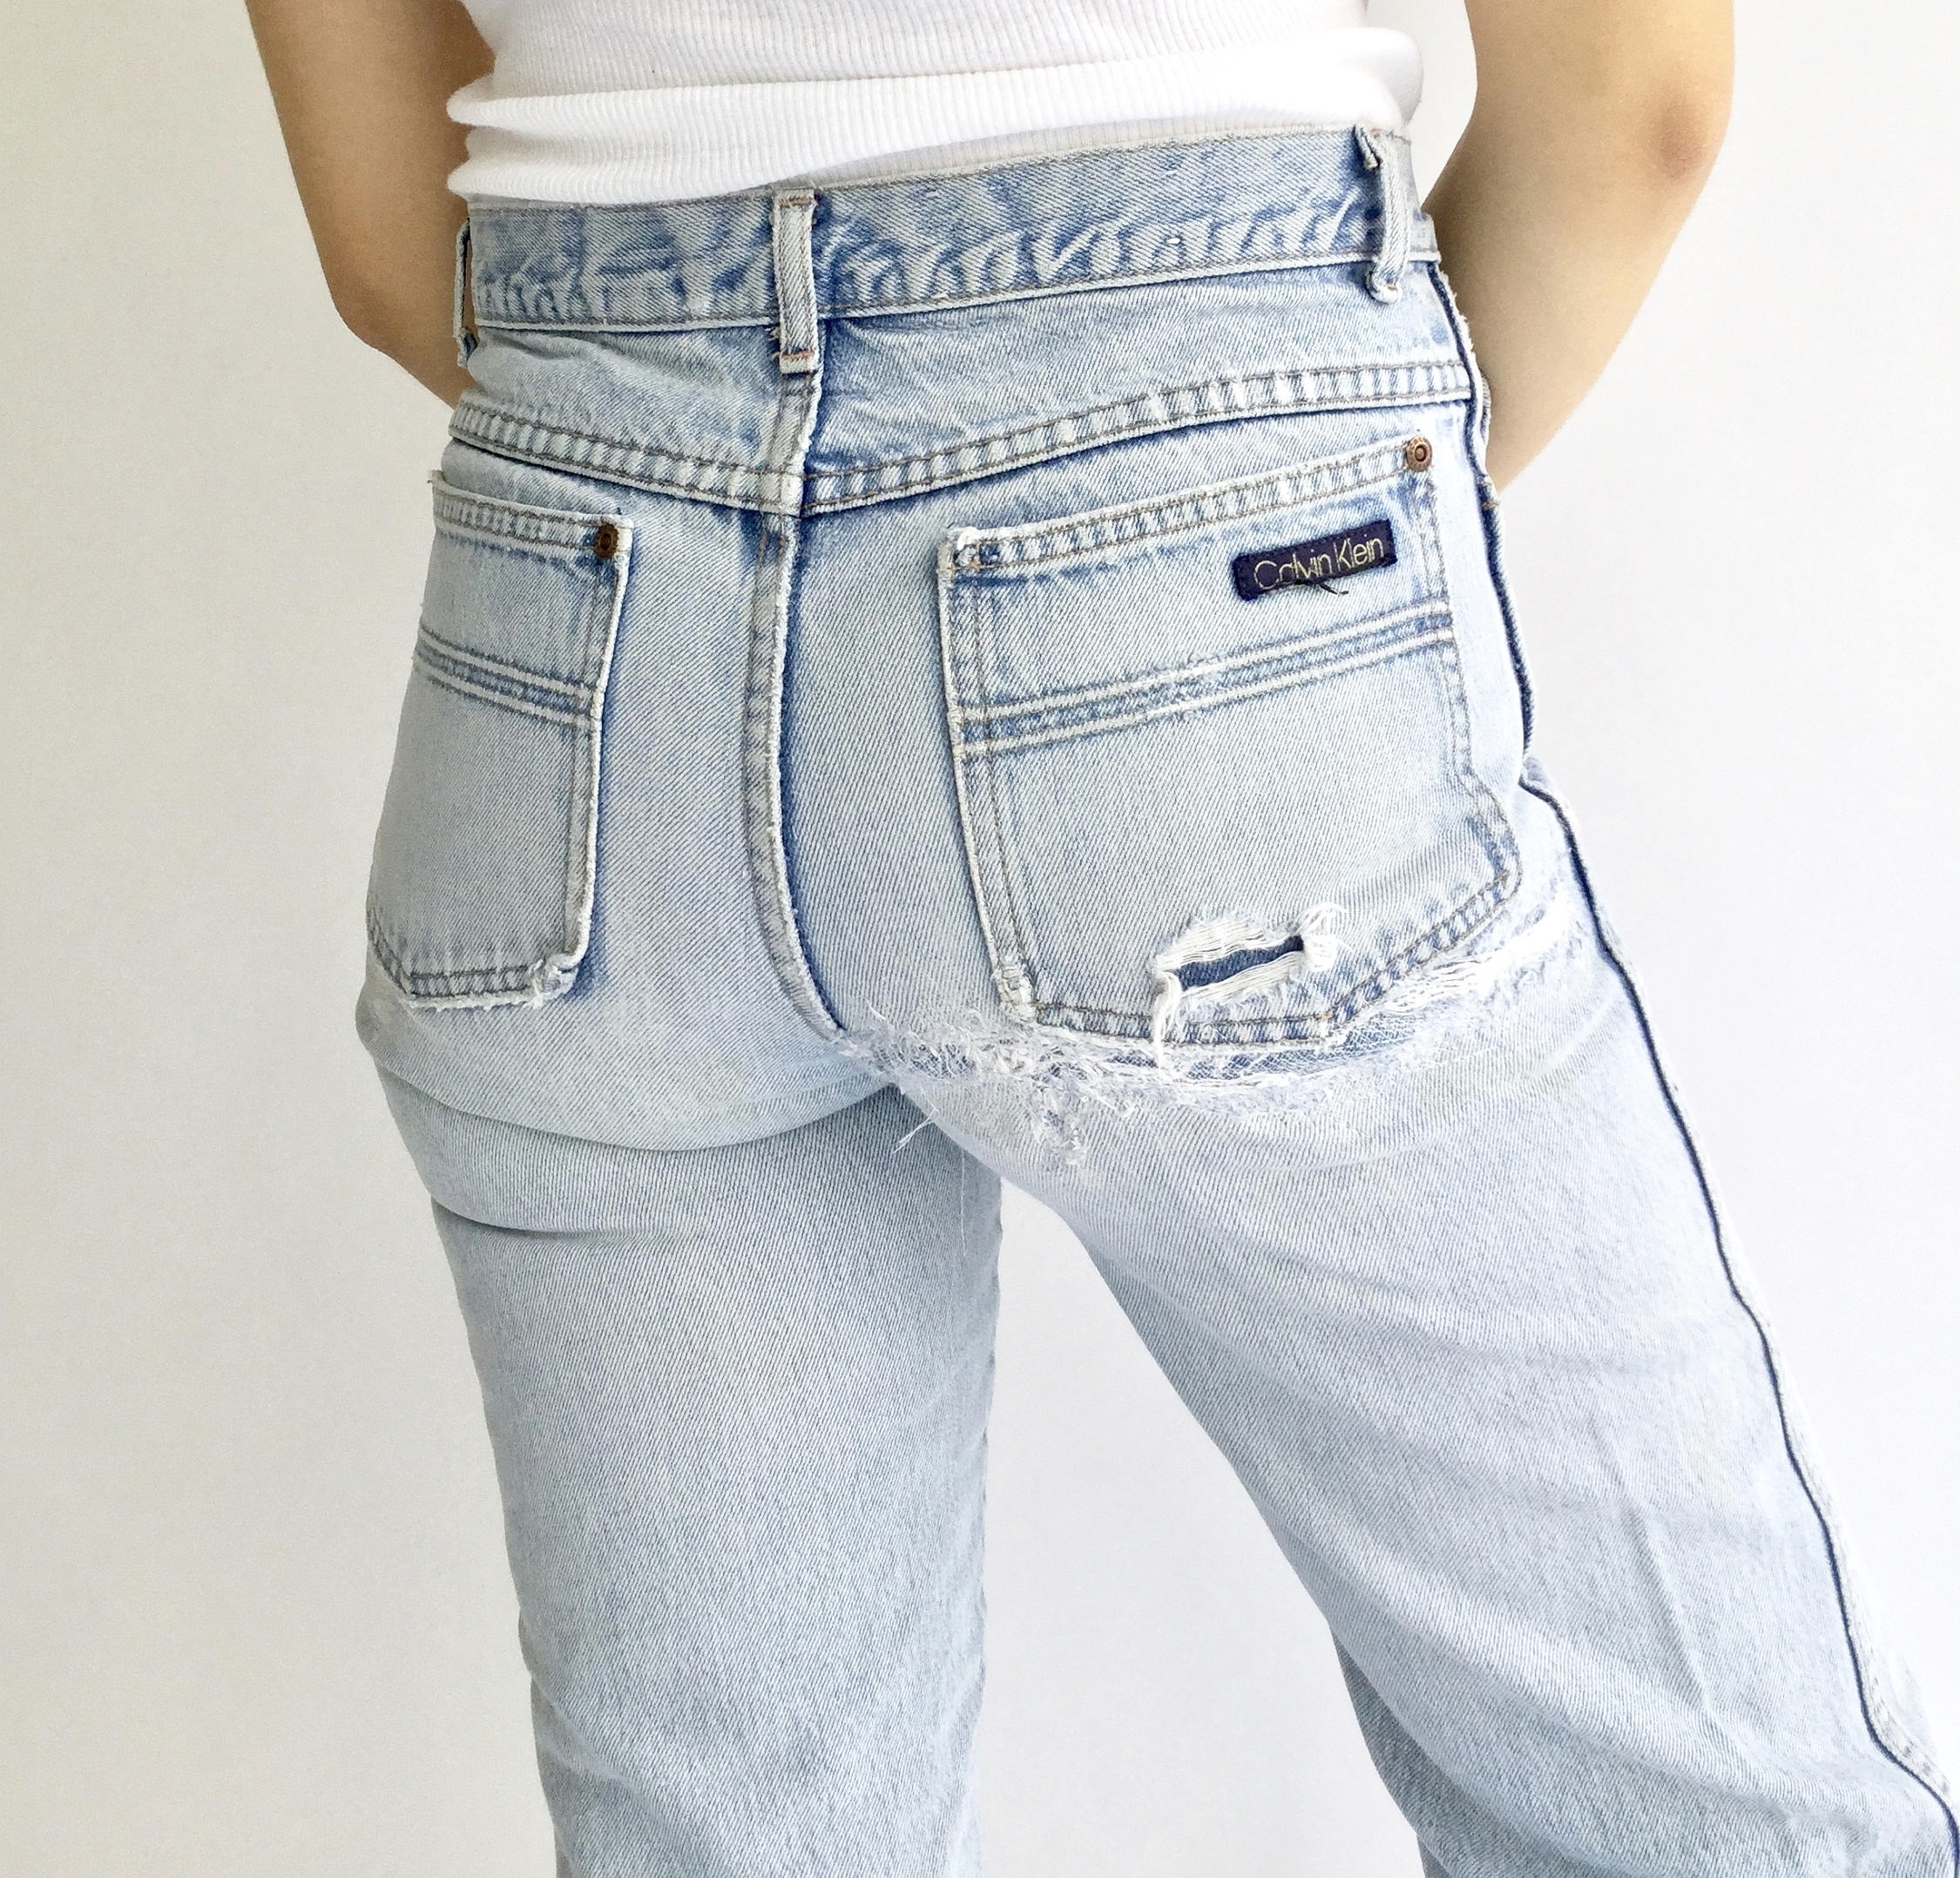 jeans shop online